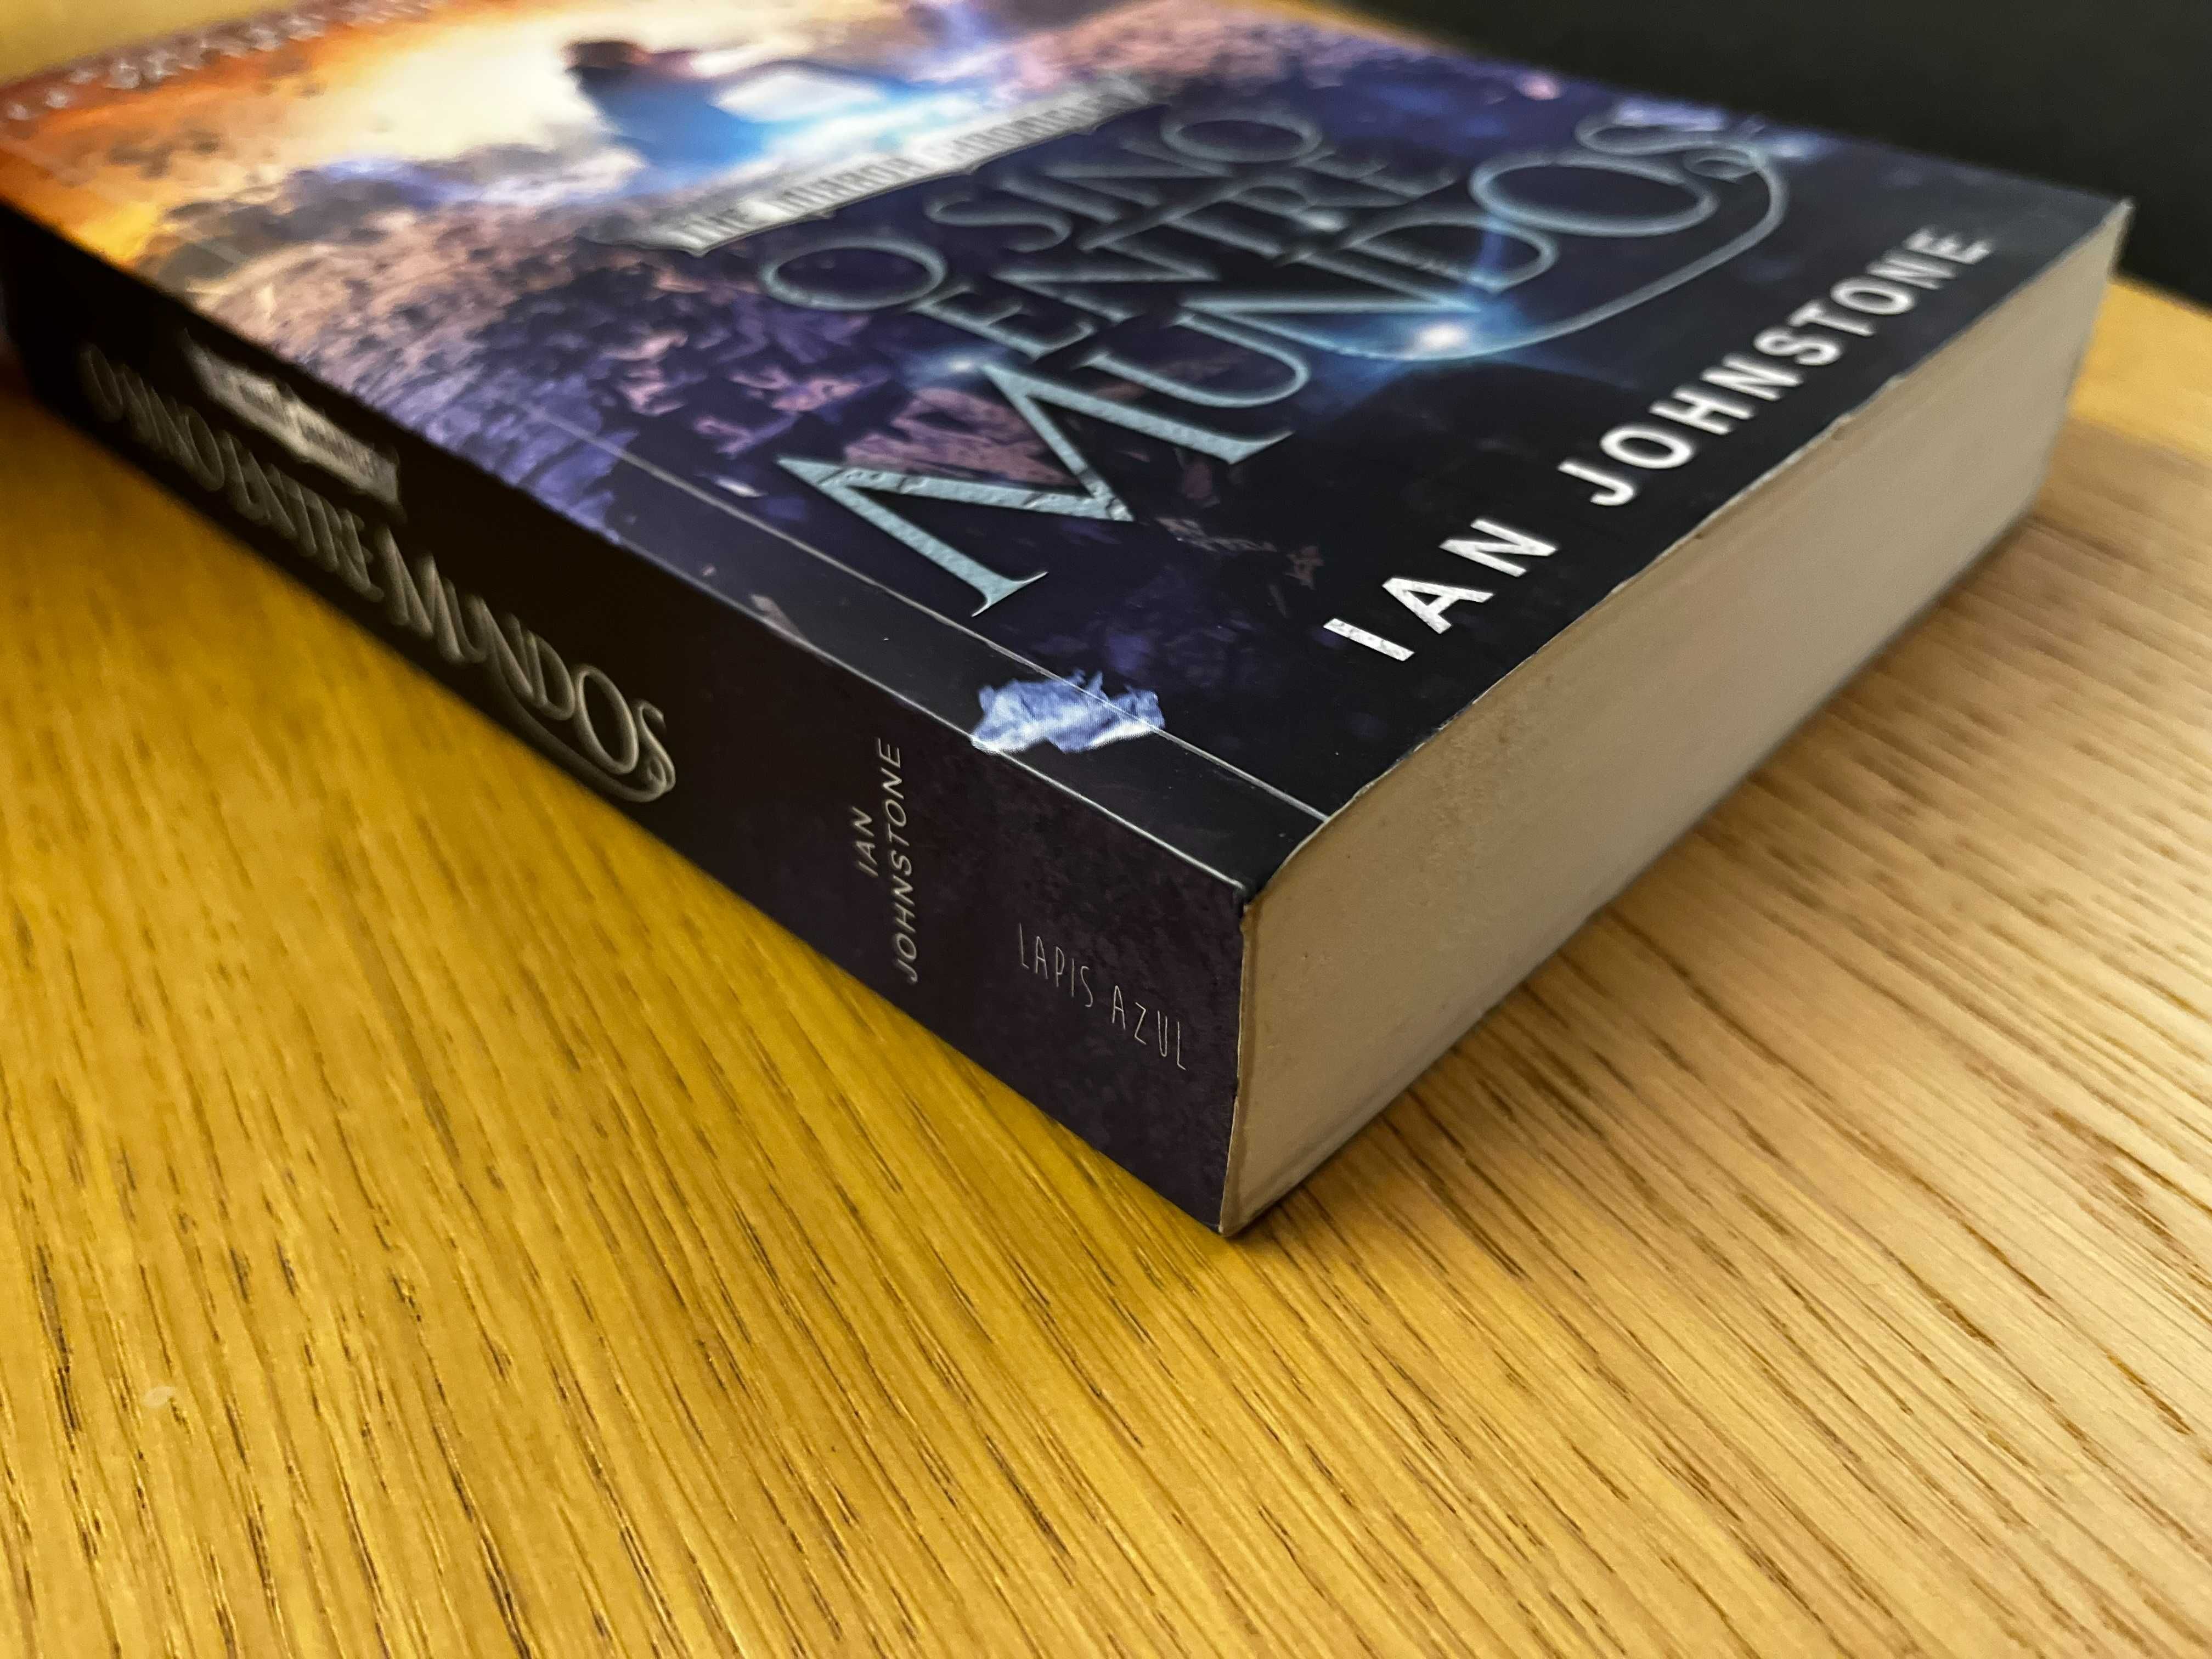 Livro "O sino entre os mundos" de Ian Johnstone